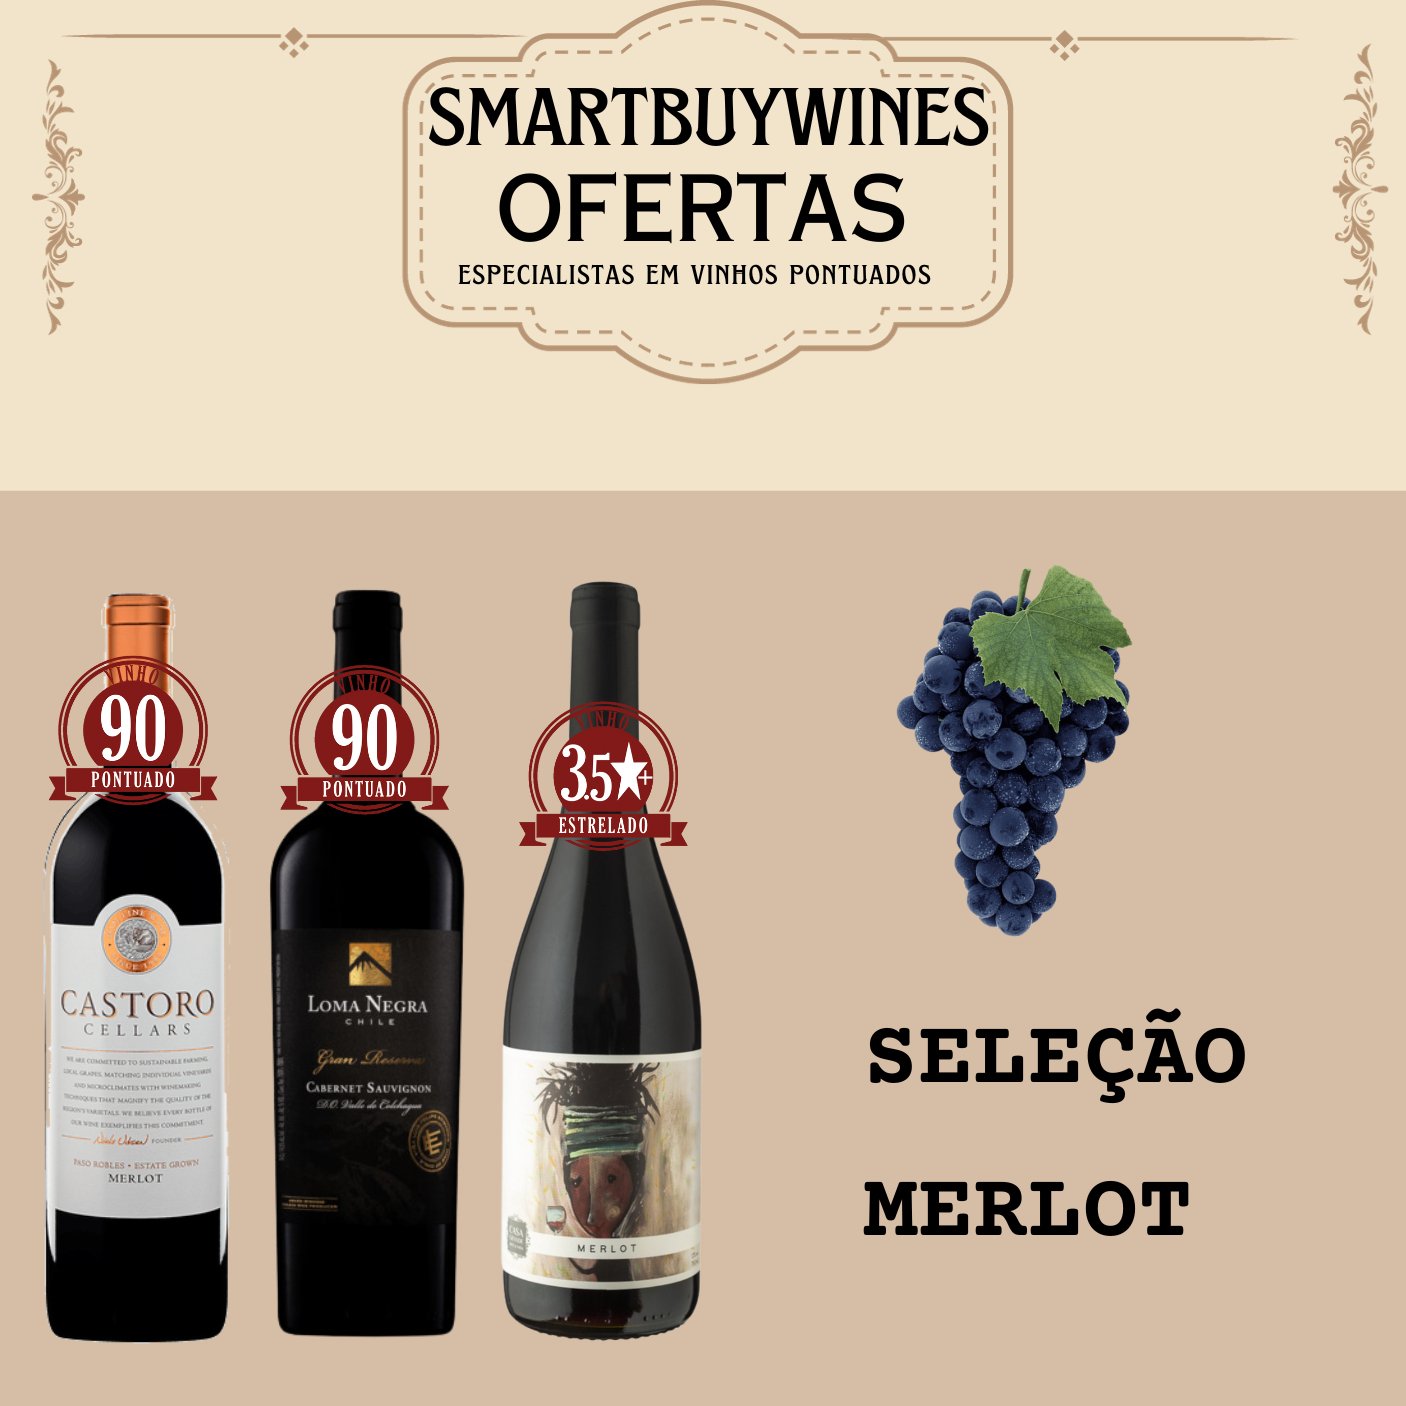 Seleção em oferta - Merlot - caixa de 3 vinhos - SmartBuyWines.com.br